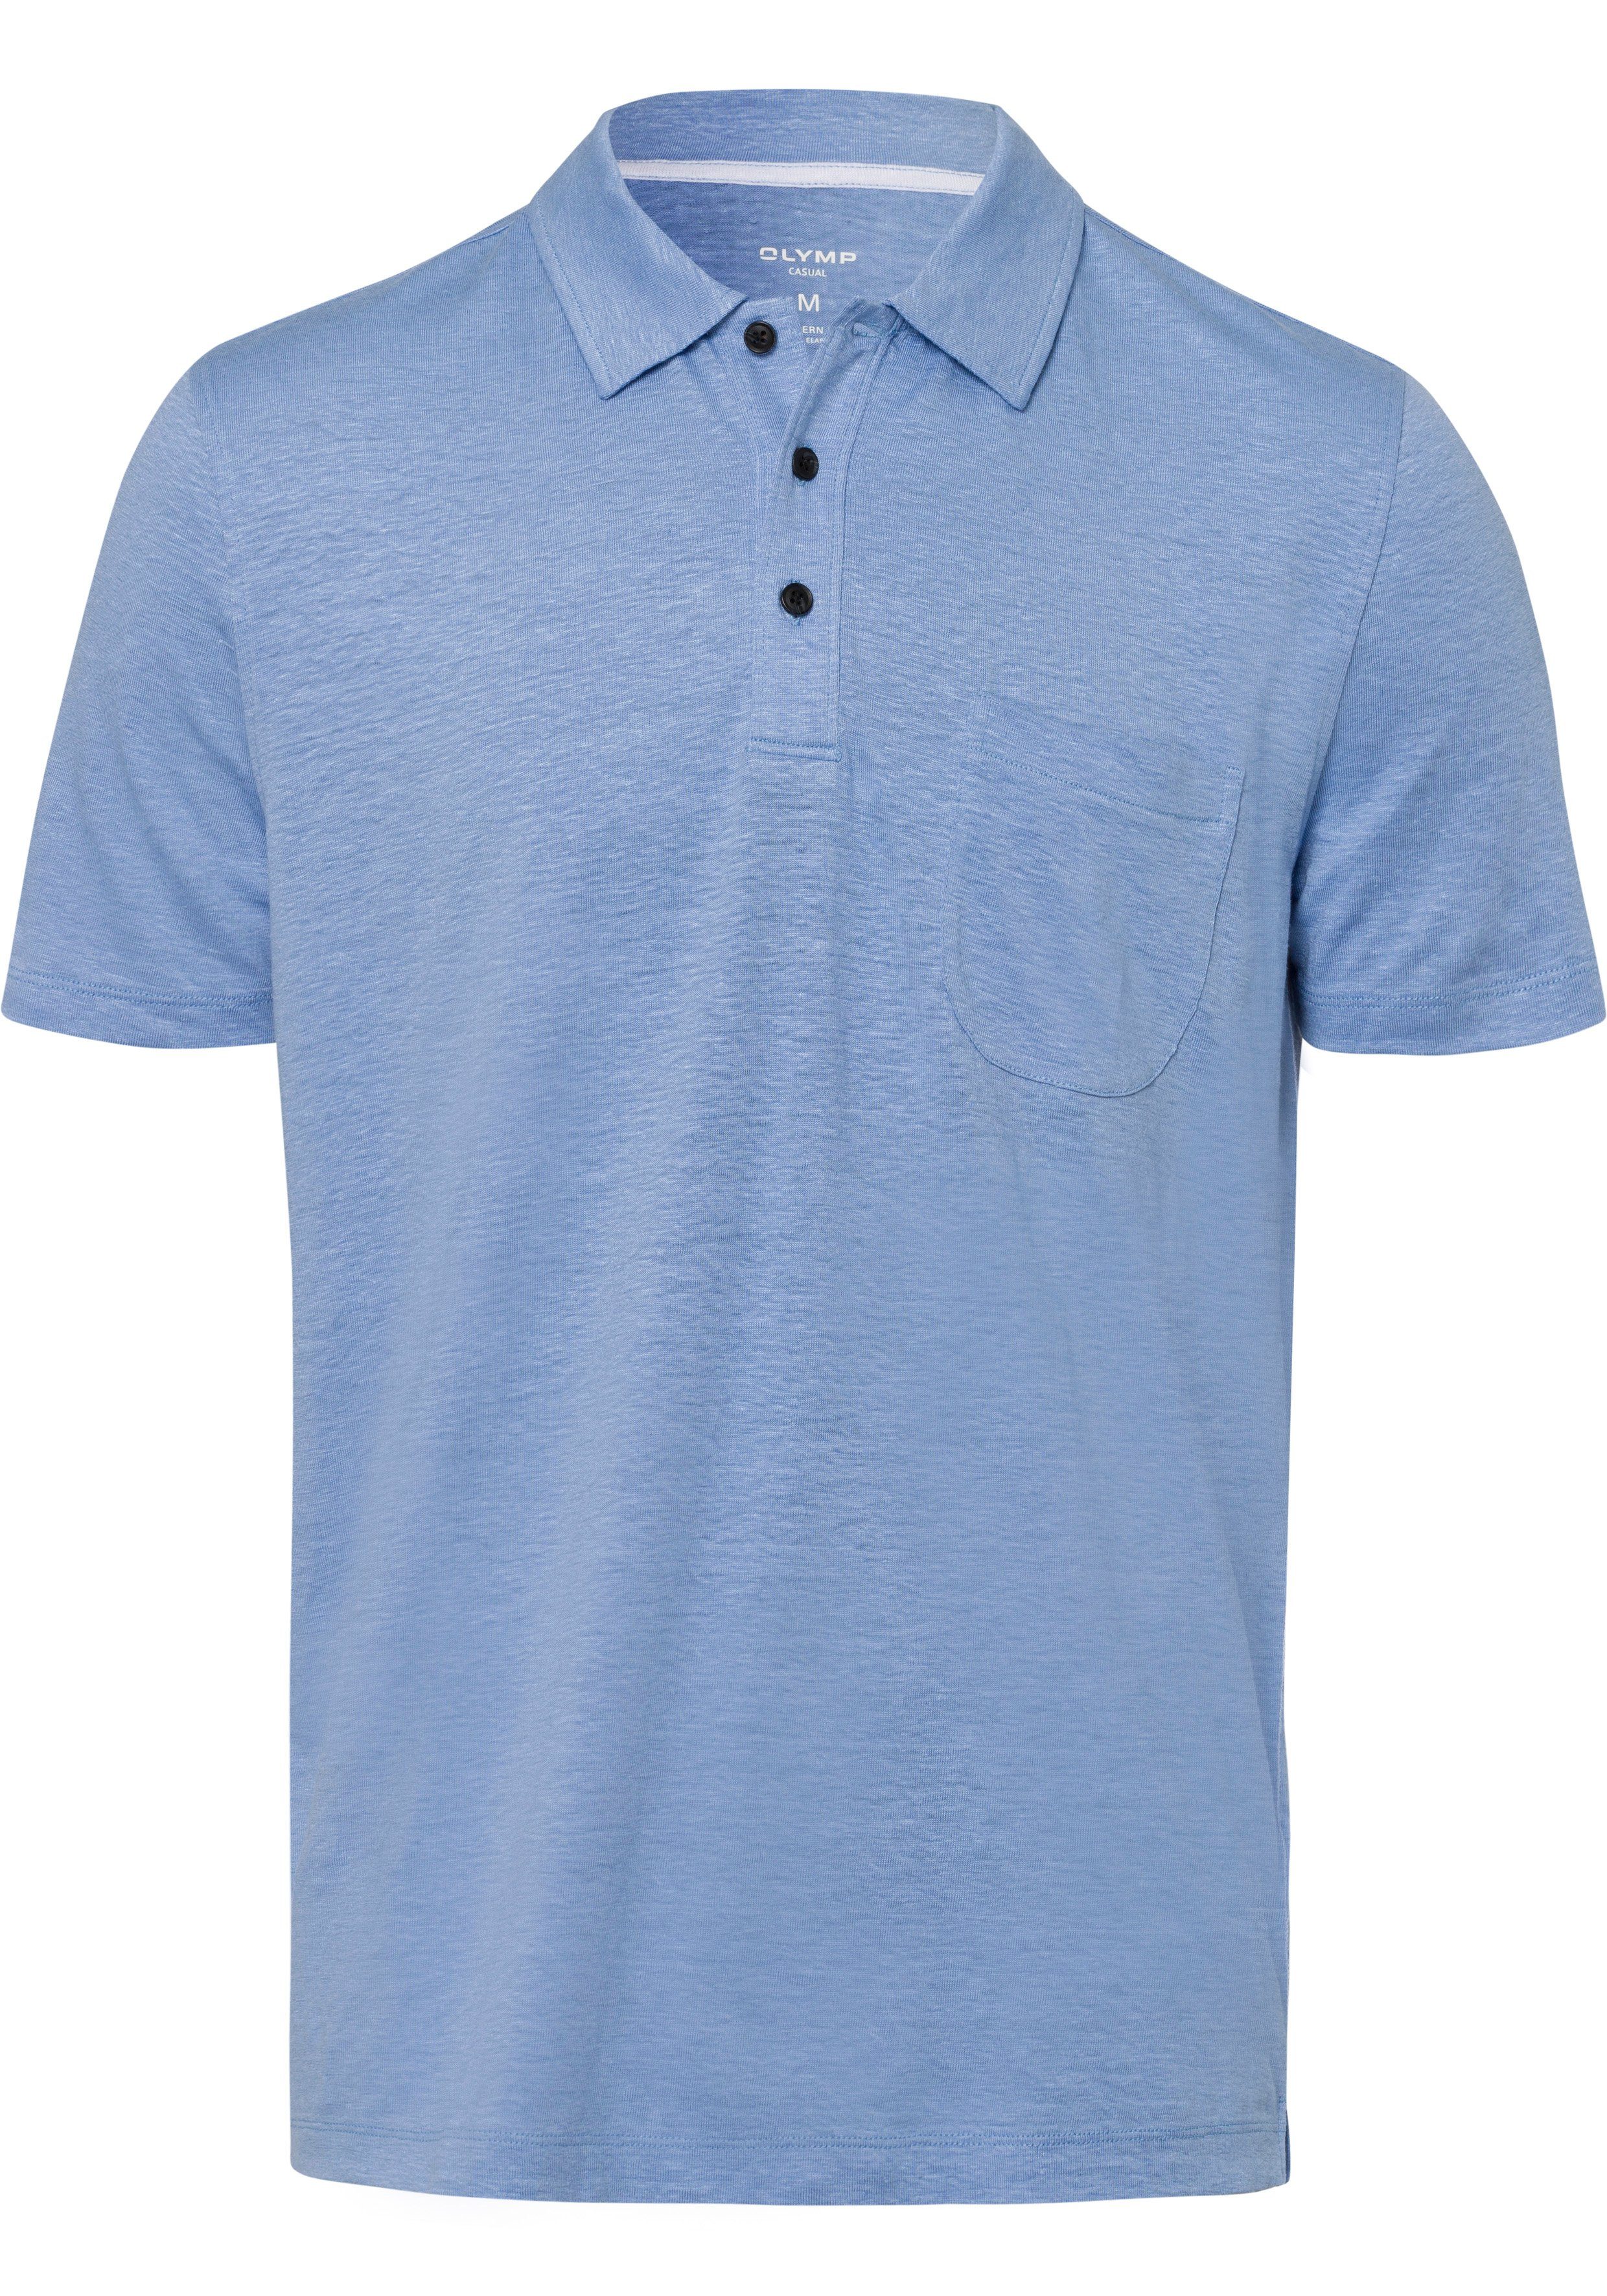 Casual-Optik Poloshirt in Hemden-Look sommerlicher OLYMP Leinen ozon im mit